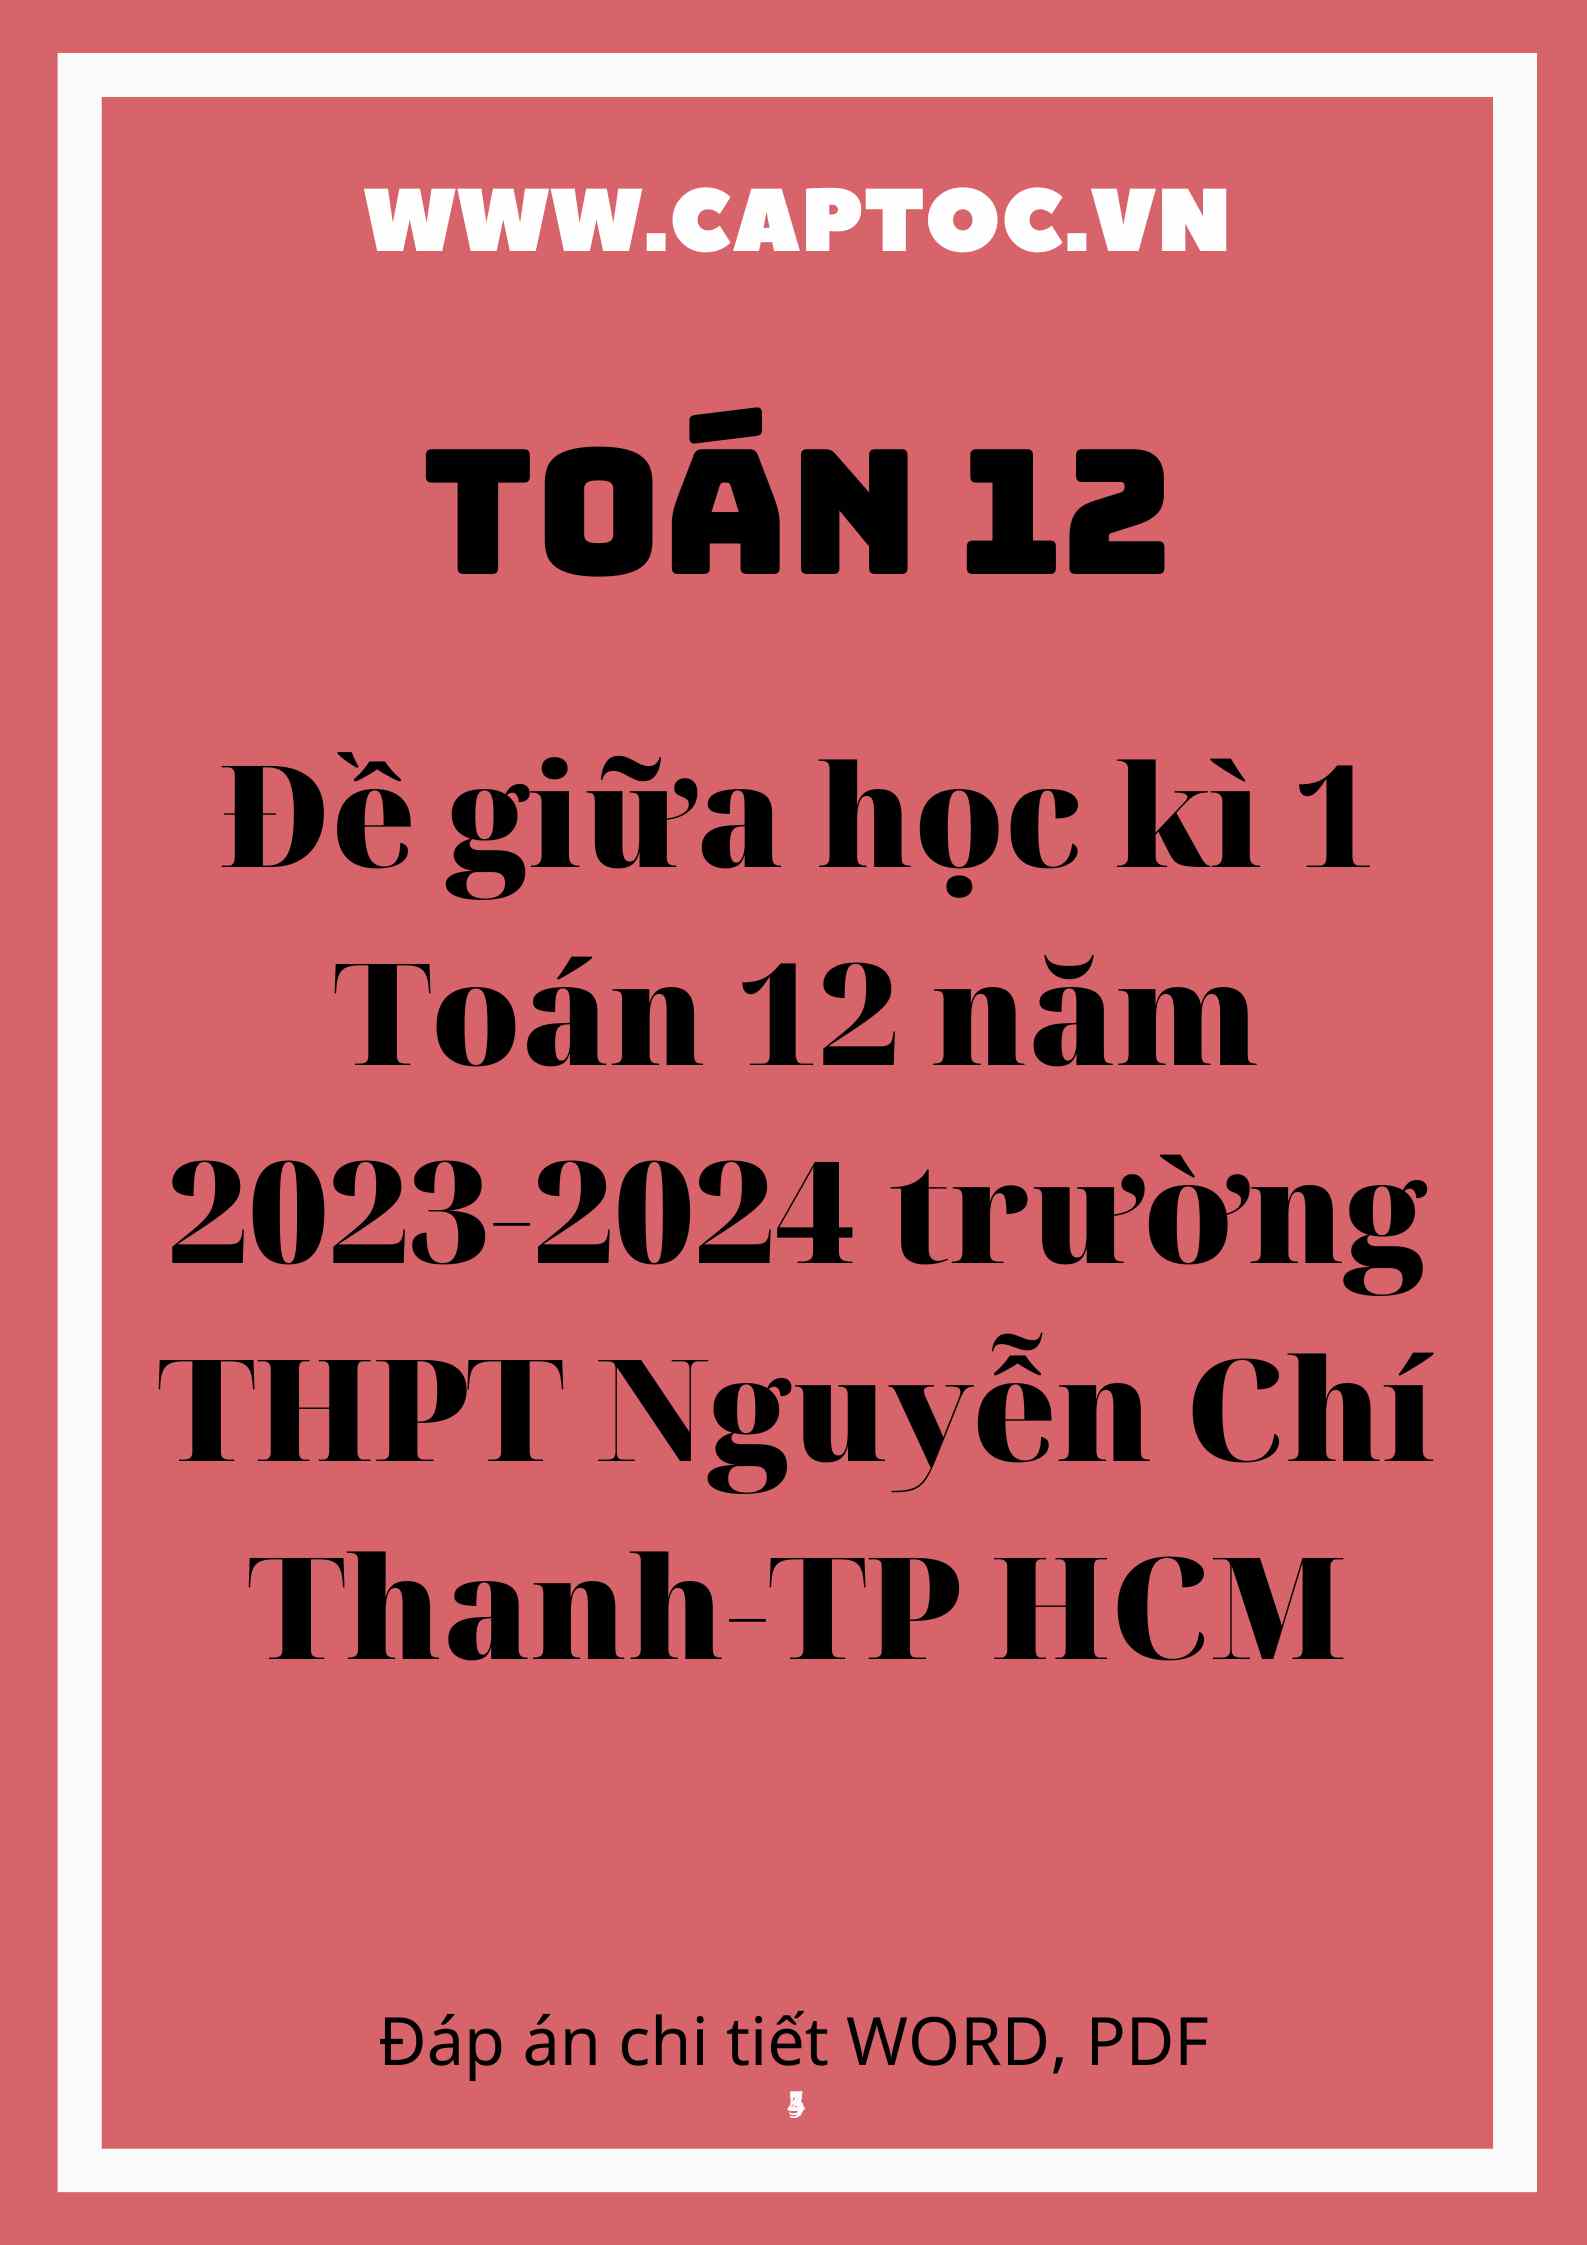 Đề giữa học kì 1 Toán 12 năm 2023-2024 trường THPT Nguyễn Chí Thanh-TP HCM